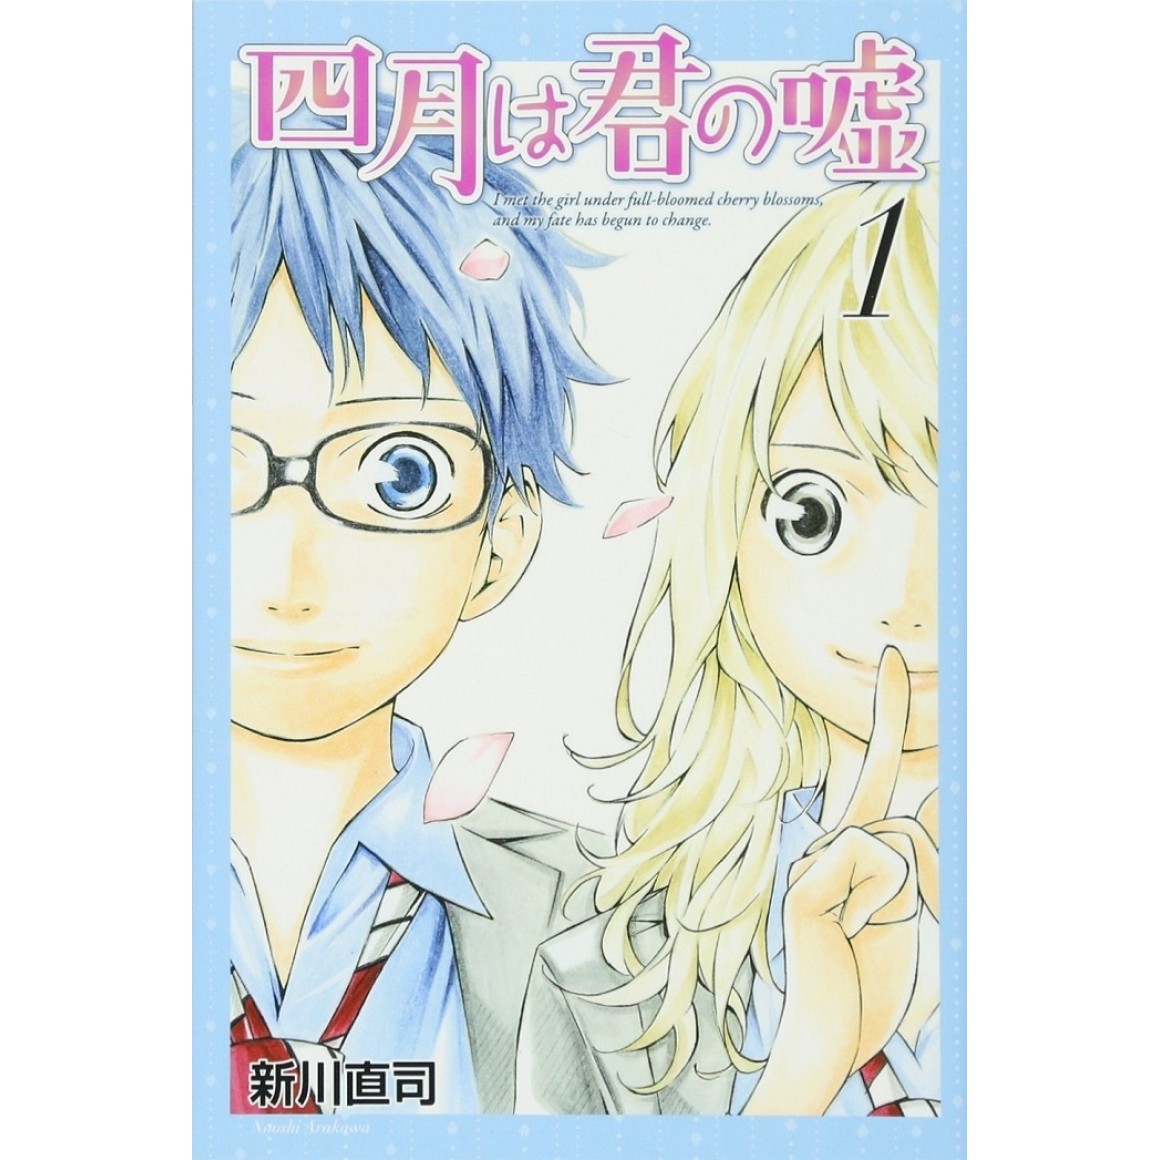 Your Lie in April Volume 11 (Shigatsu wa Kimi no Uso) - Manga Store 